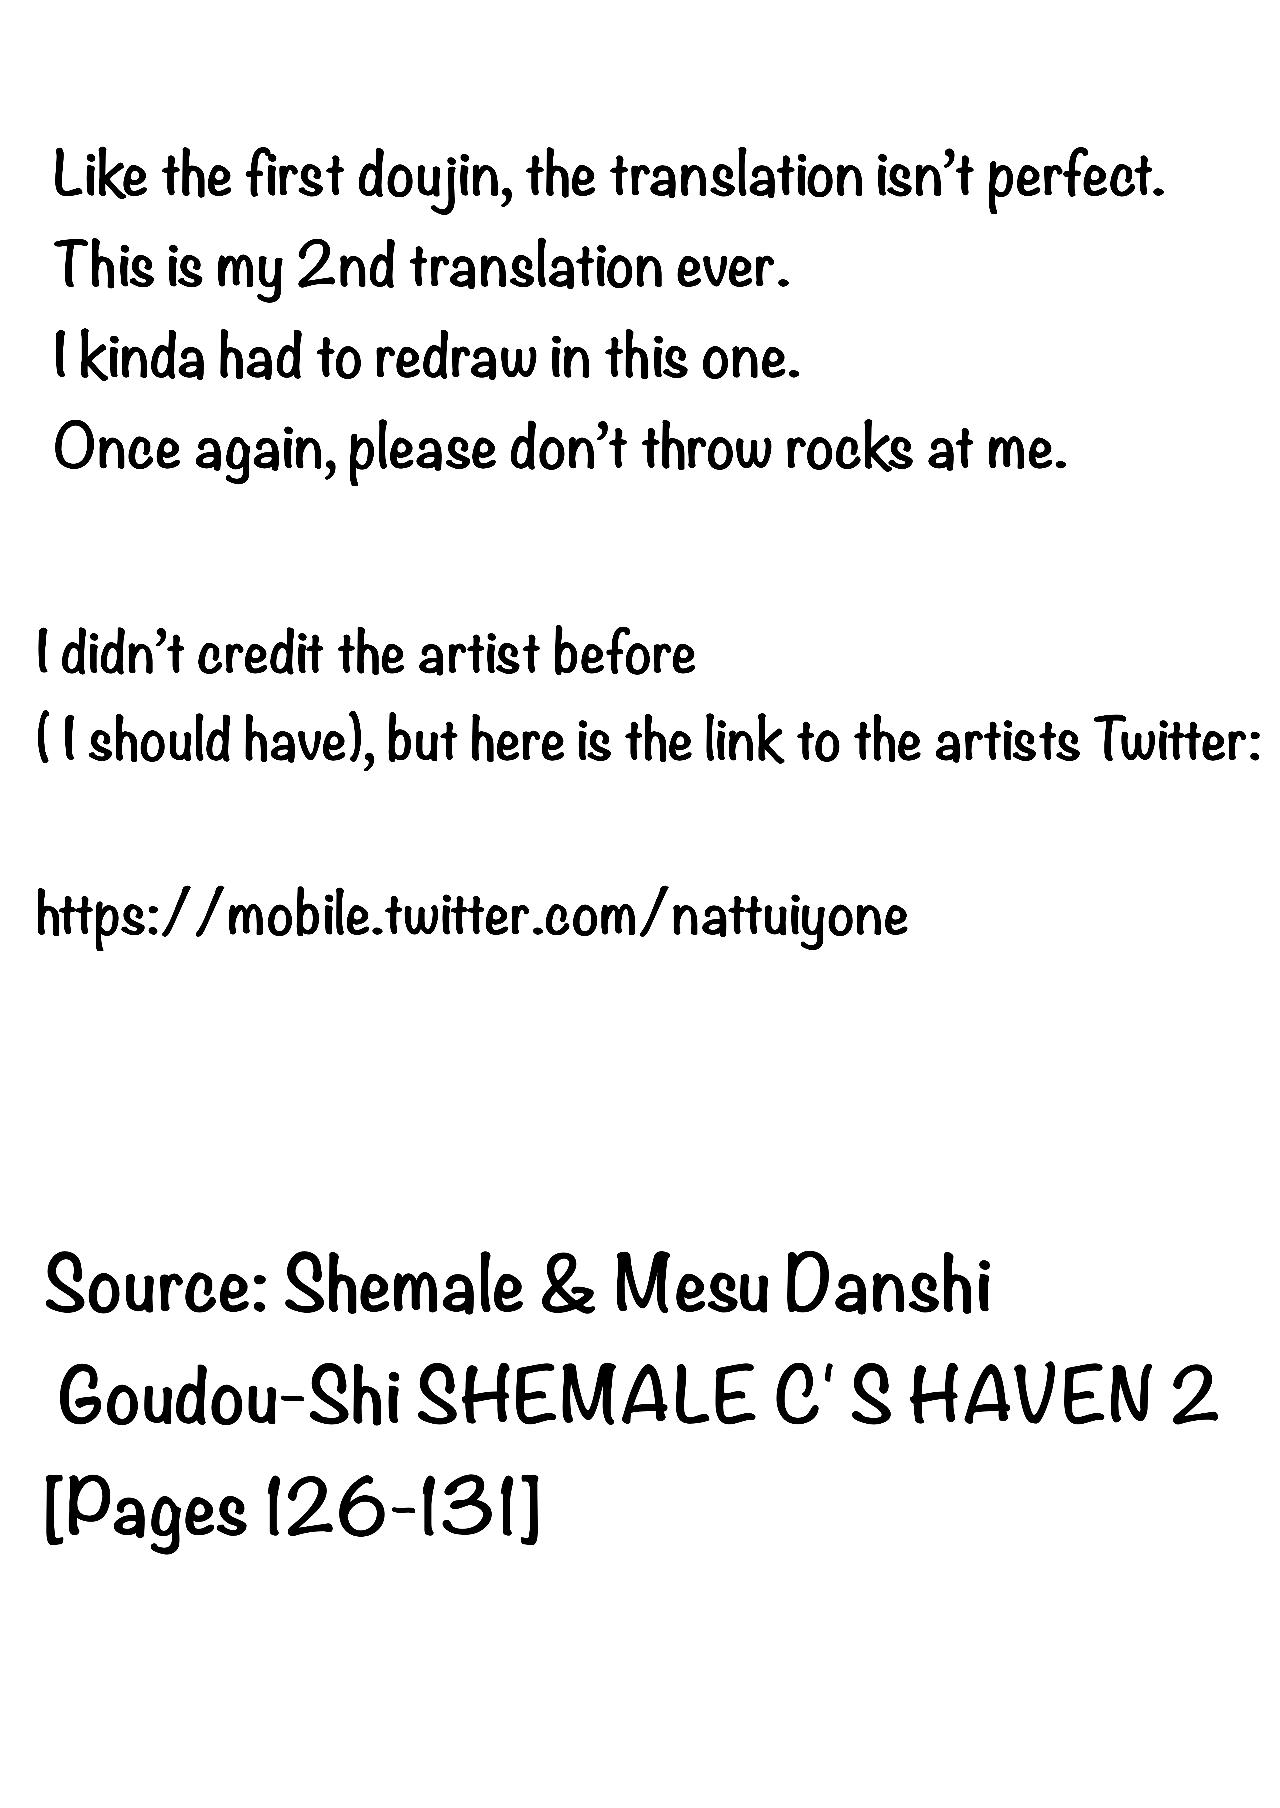 Shemale & Mesu Danshi Goudou-Shi SHEMALE C' S HAVEN 2 6